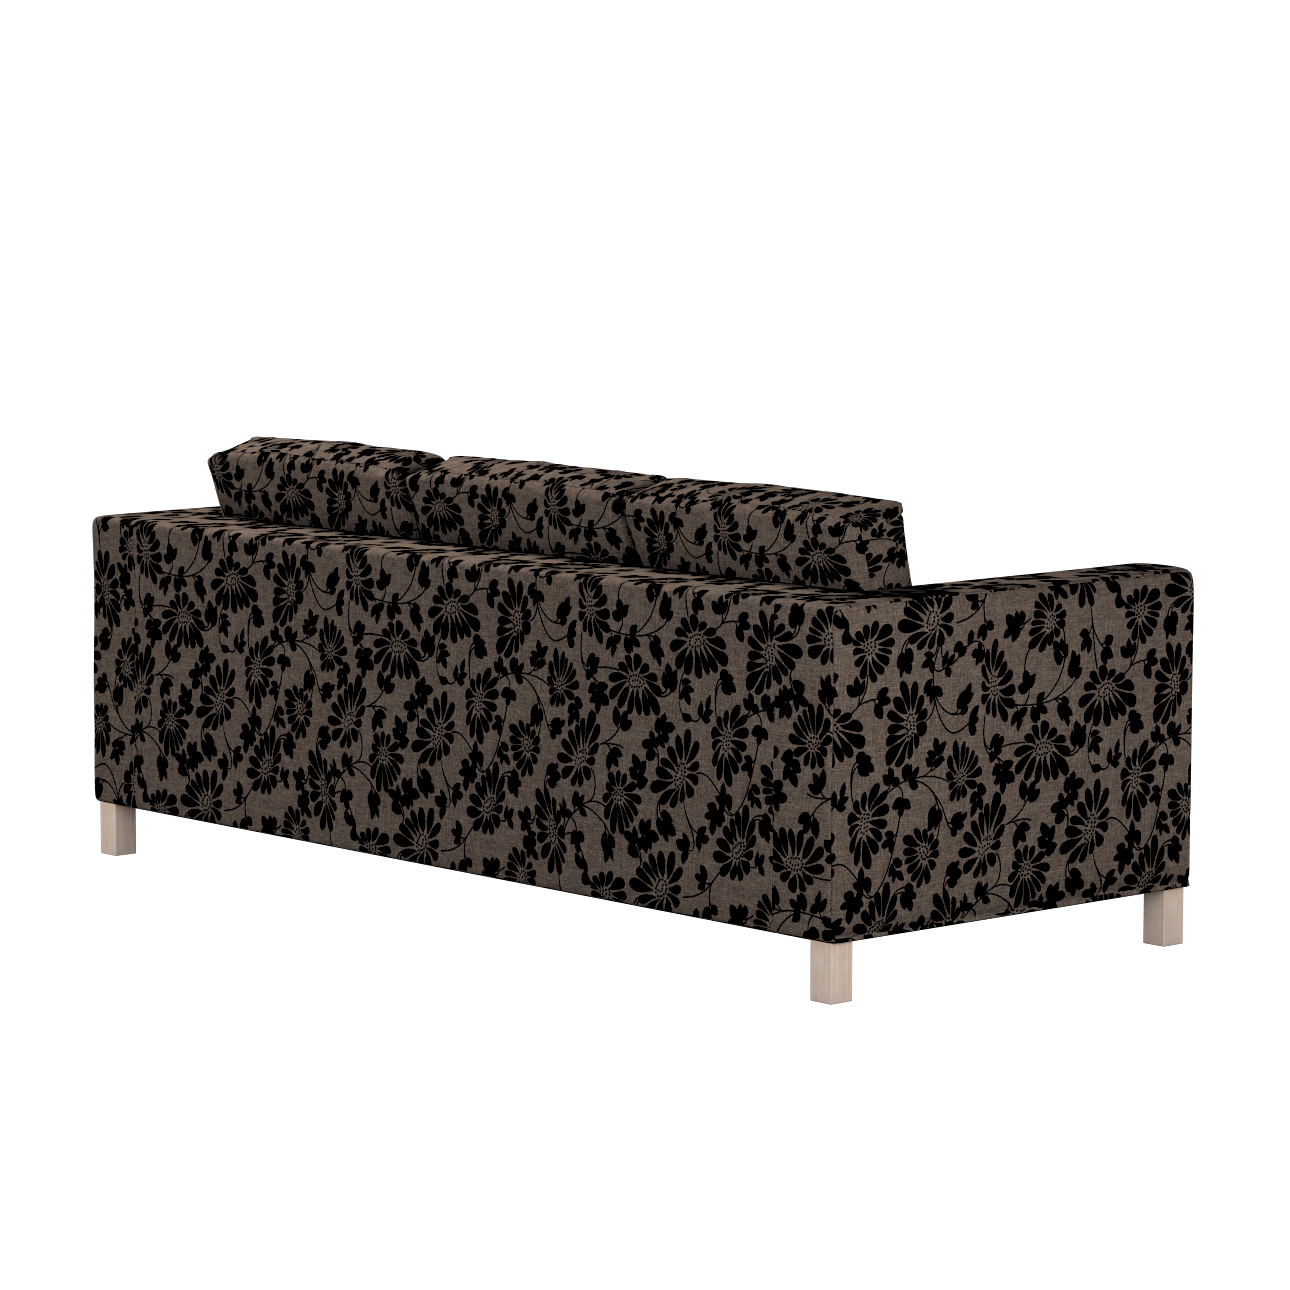 Bezug für Karlanda 3-Sitzer Sofa nicht ausklappbar, kurz, braun-schwarz, Be günstig online kaufen